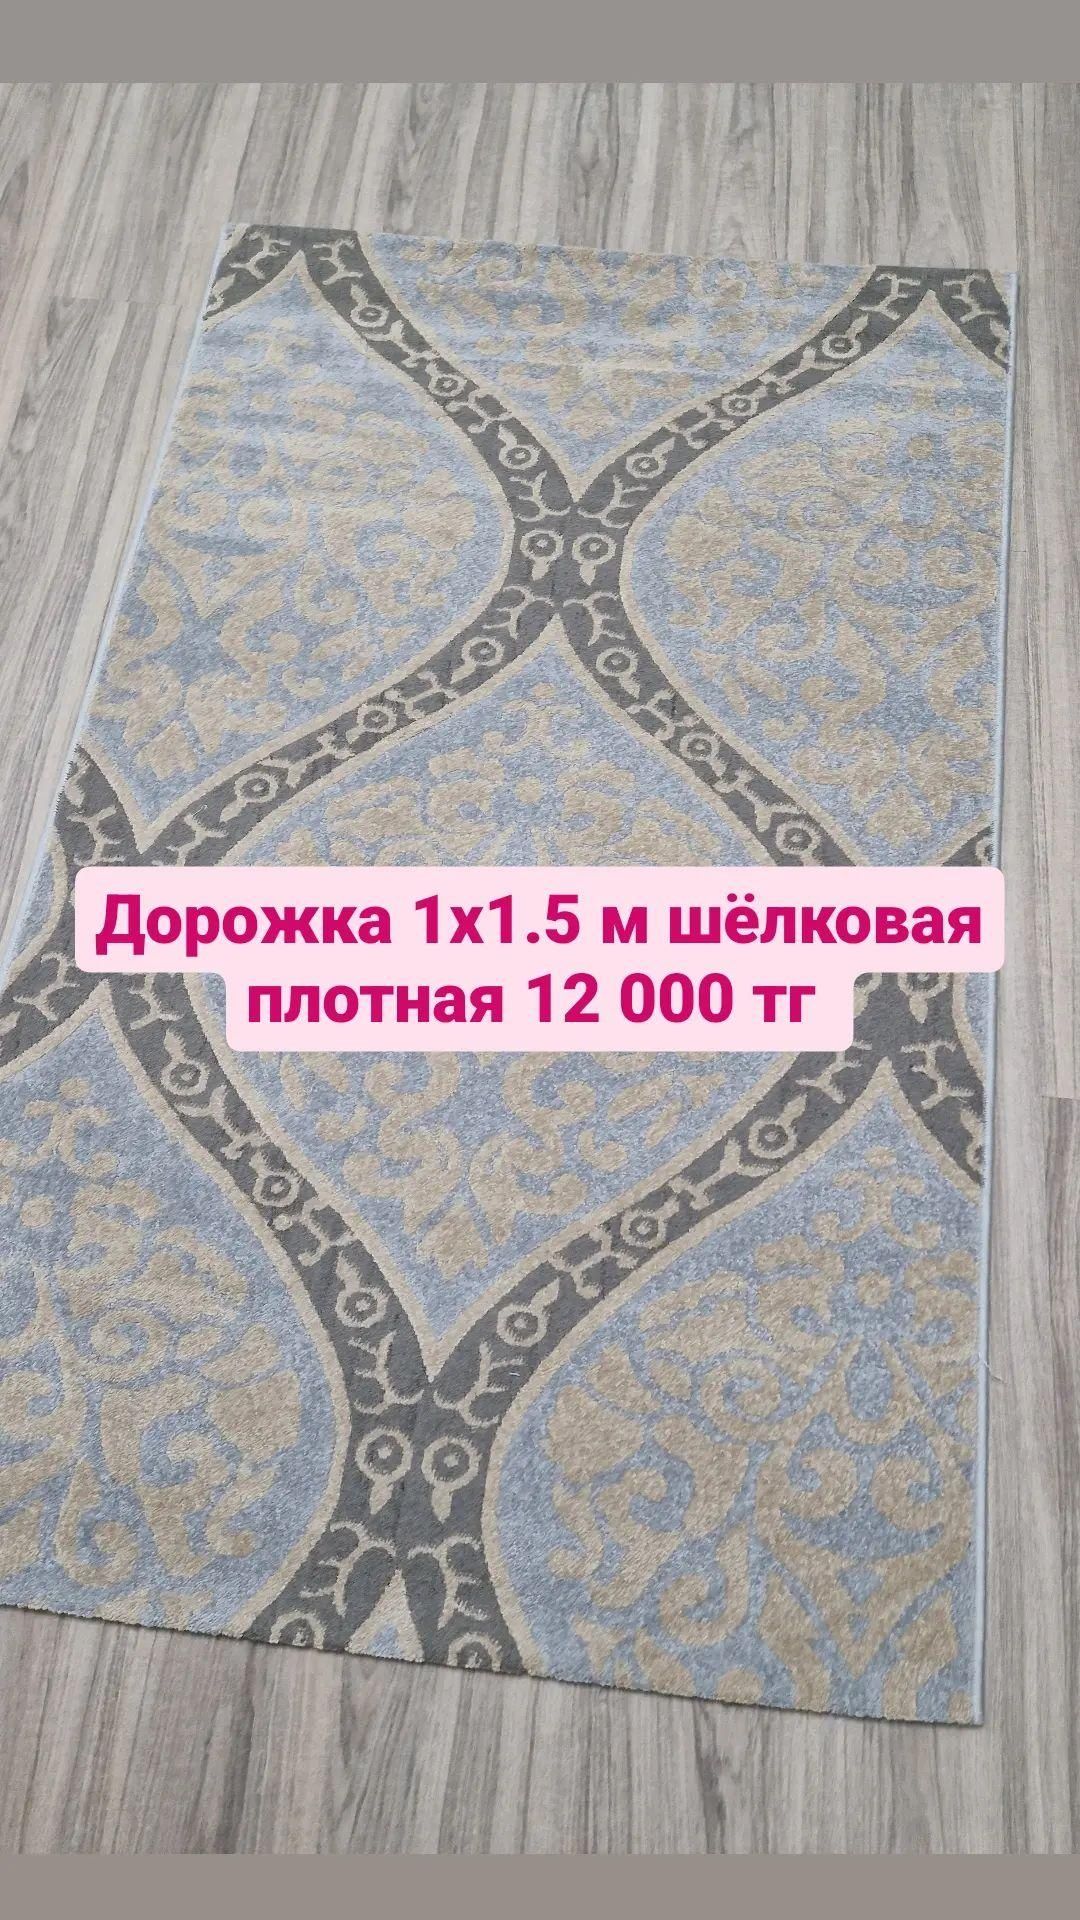 Дорожка новая 1х1.5 м со склада Алматы.